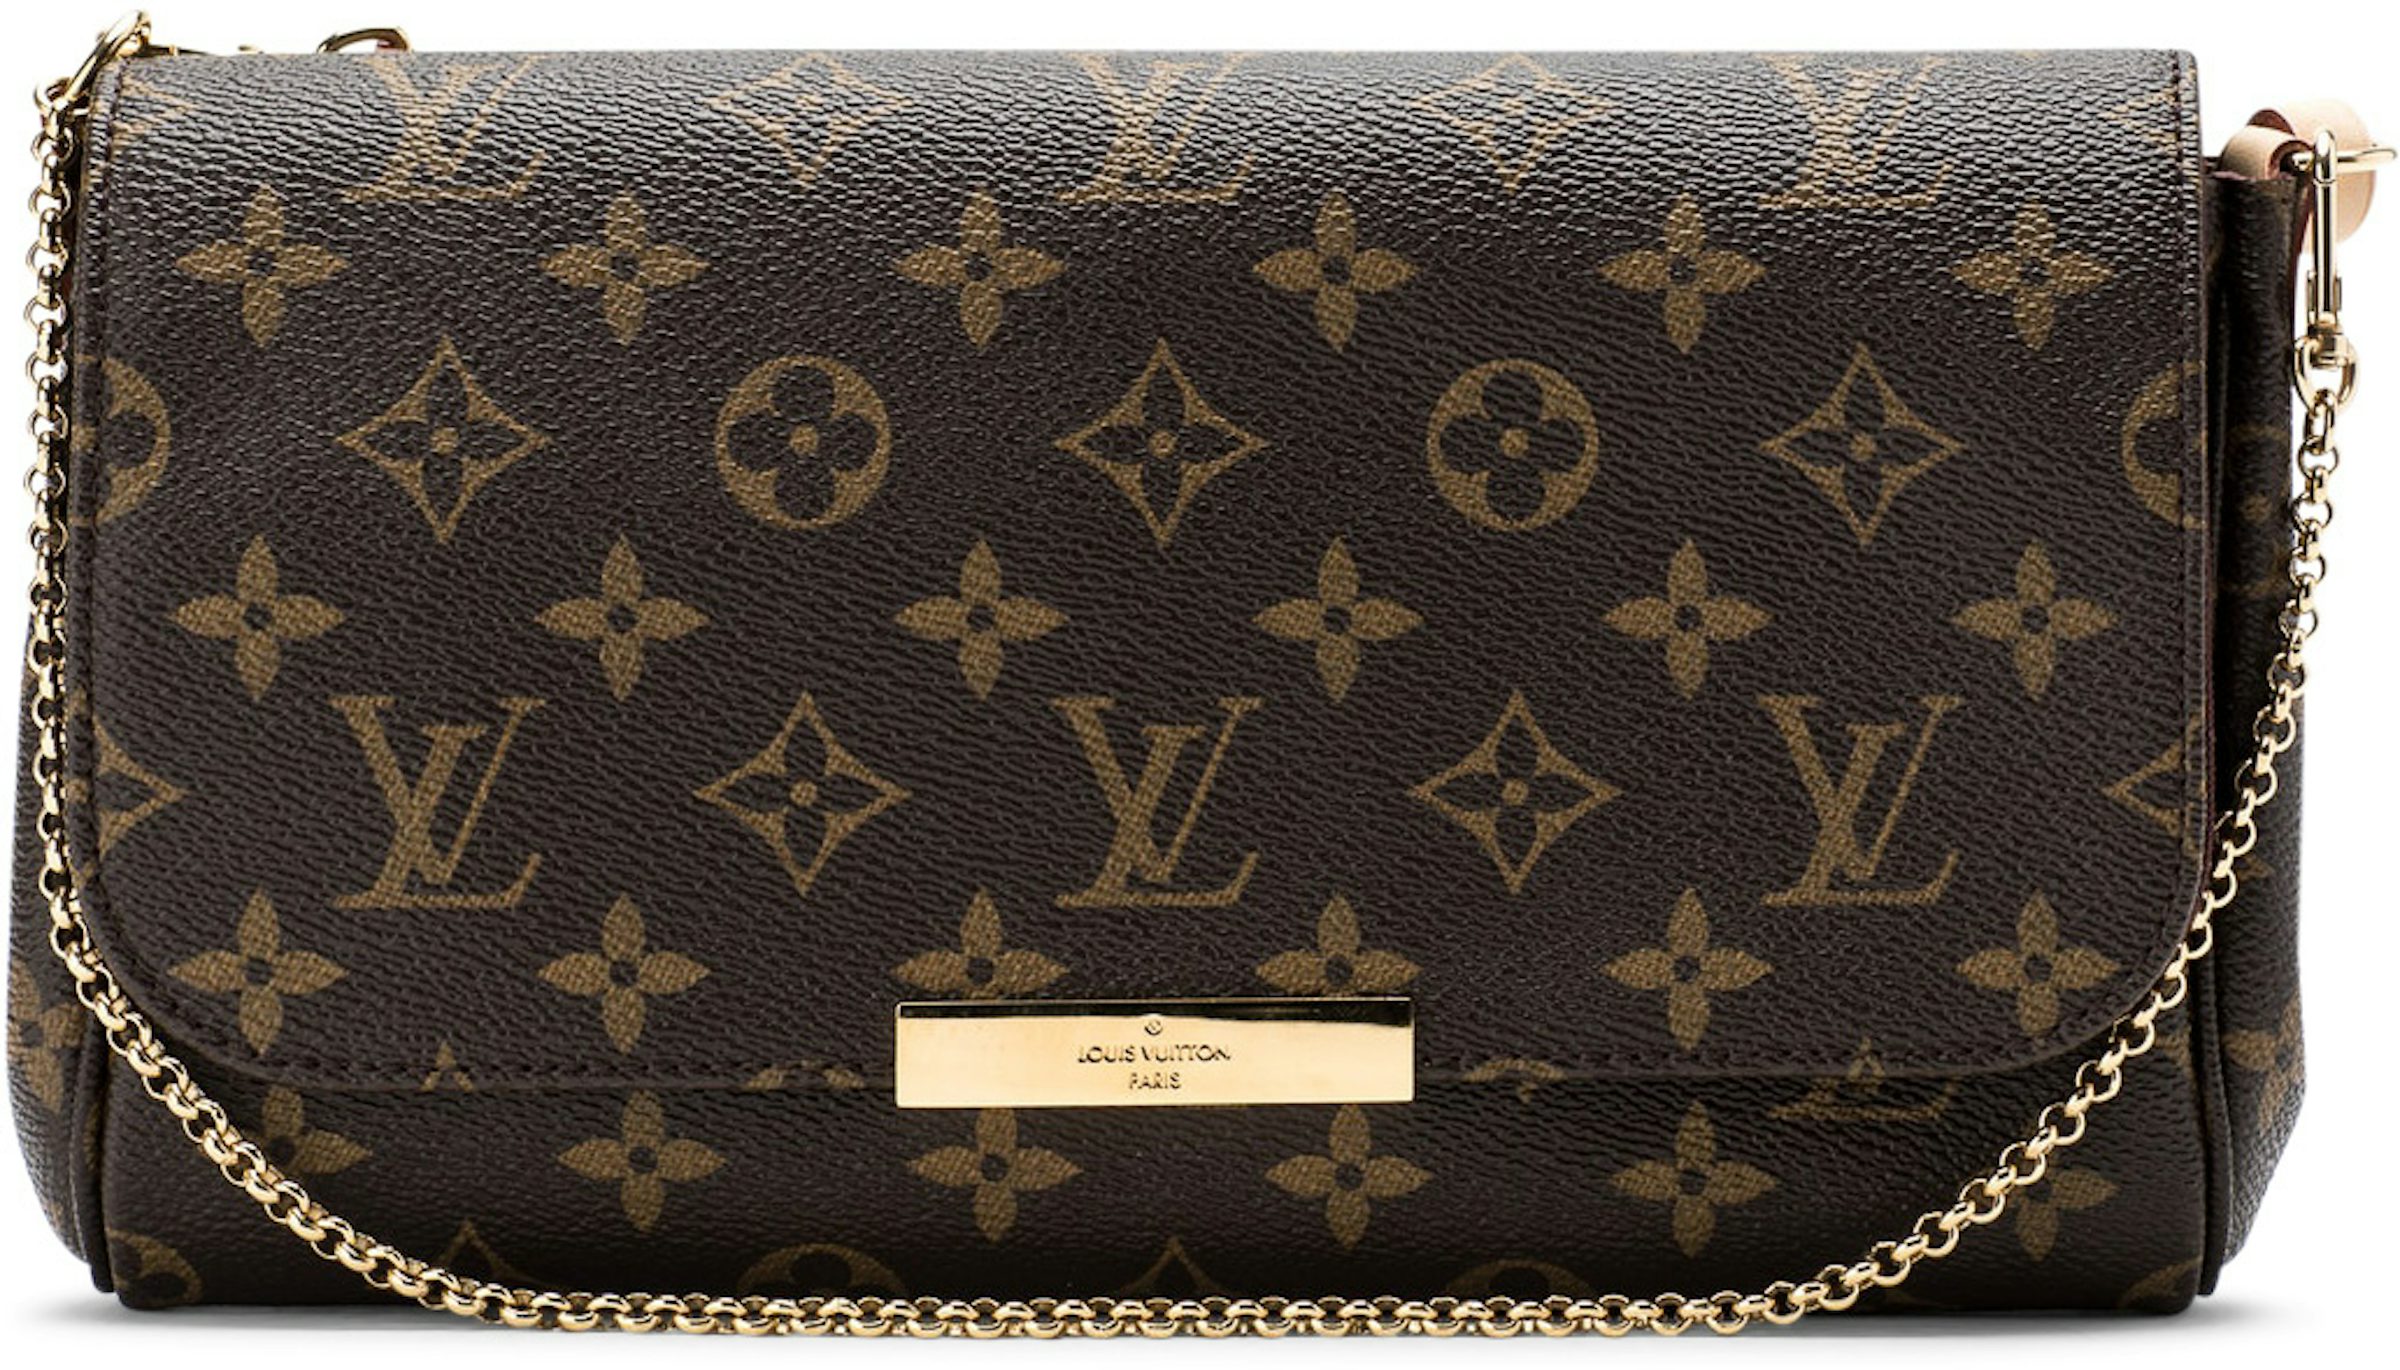 Louis Vuitton Favorite Monogram MM Burgundy Lining - US